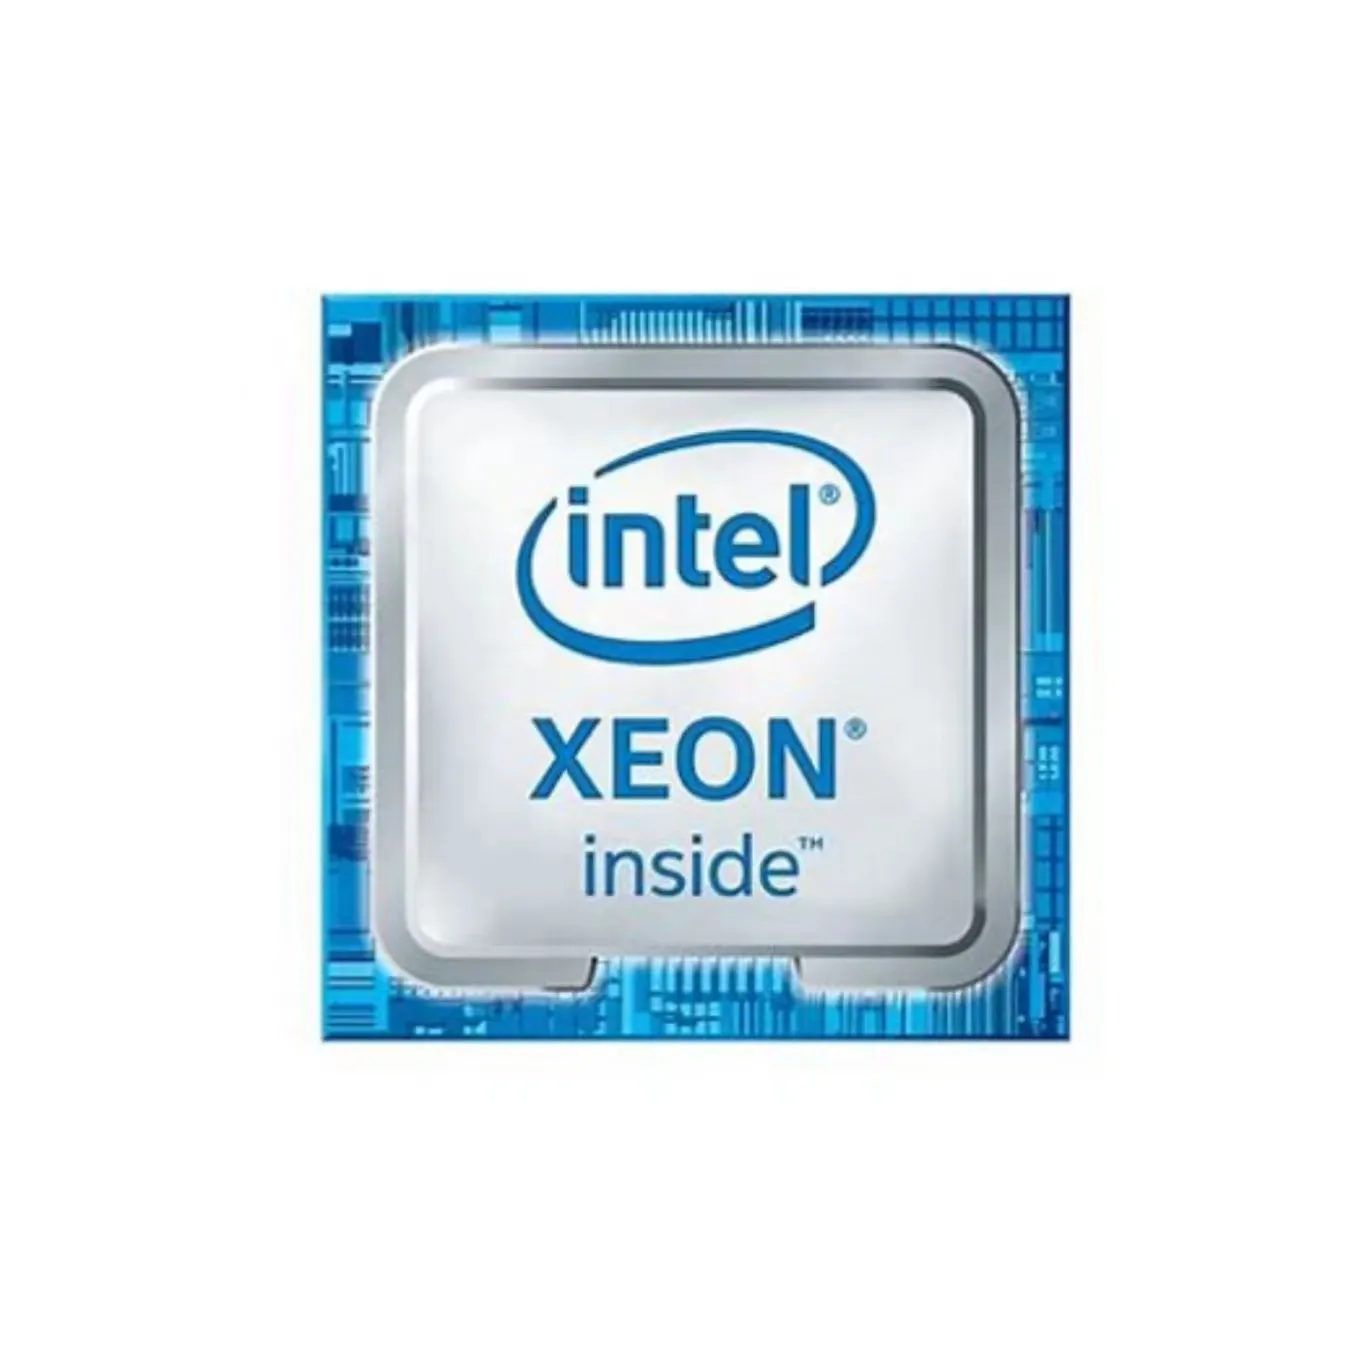 Nuevo procesador Intel Xeon de marca original (caché de 15M, hasta 3,50 GHz), con bandeja para servidor, nuevo, 1, 2, 2, 2, 1, 2, 1, 2, 1, 2, 1, 2, 1, 2, 1, 1, 2, 1, 2, 1, 2